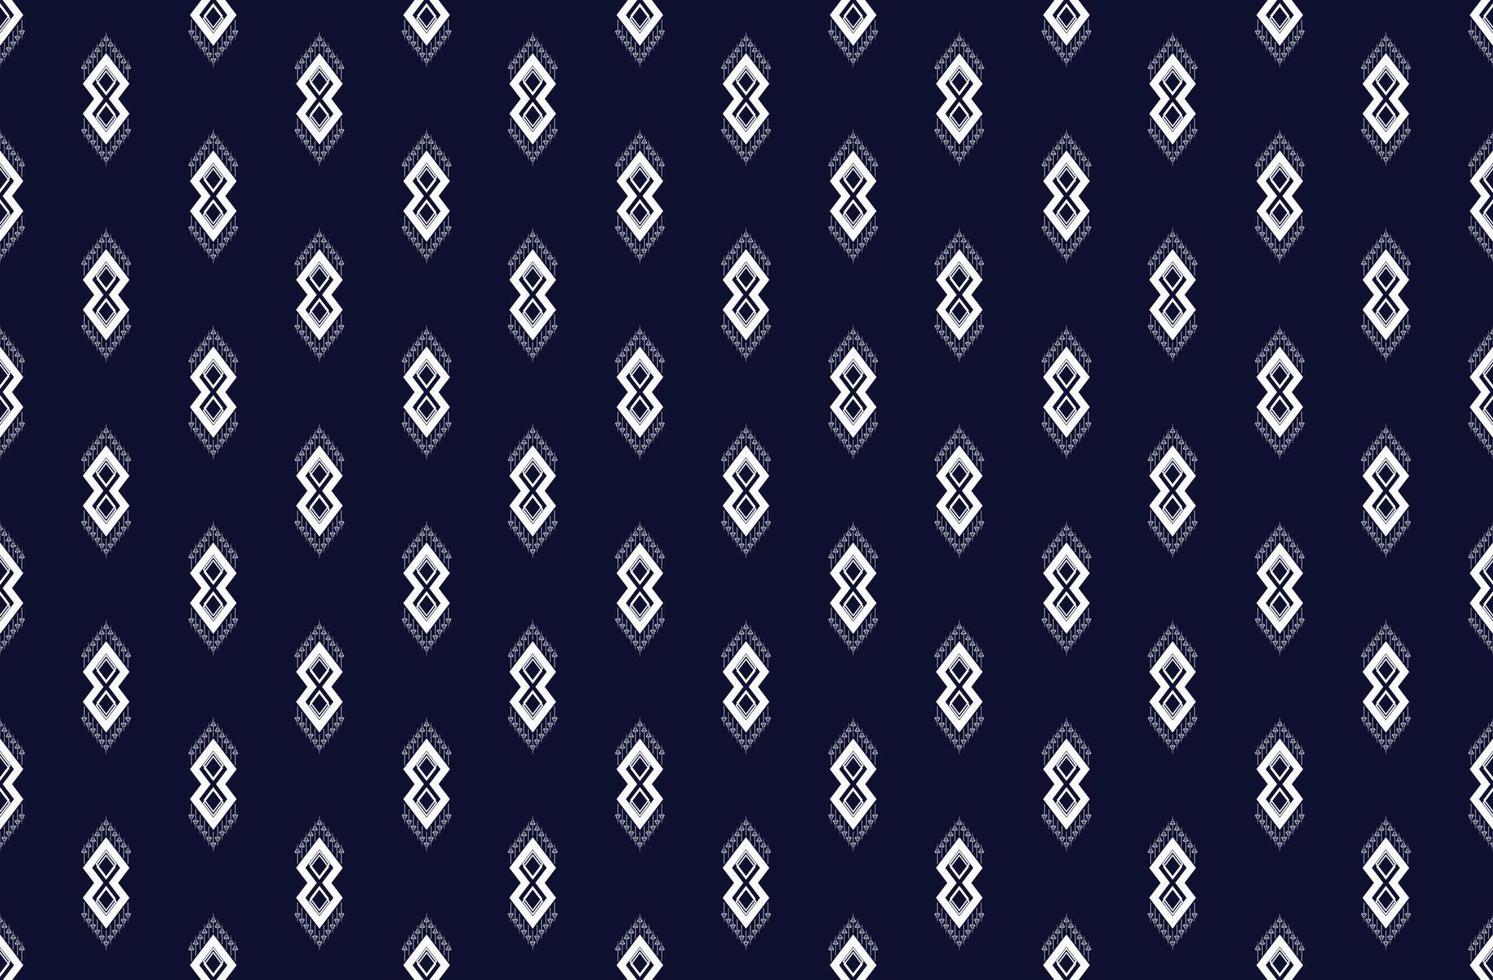 bordado de textura étnica geométrica padrão sem costura com design de fundo azul escuro usado em papel de parede, saia, tapete, papel de parede, roupas, embrulho, batik, tecido, folha usada em vetor, ilustração vetor